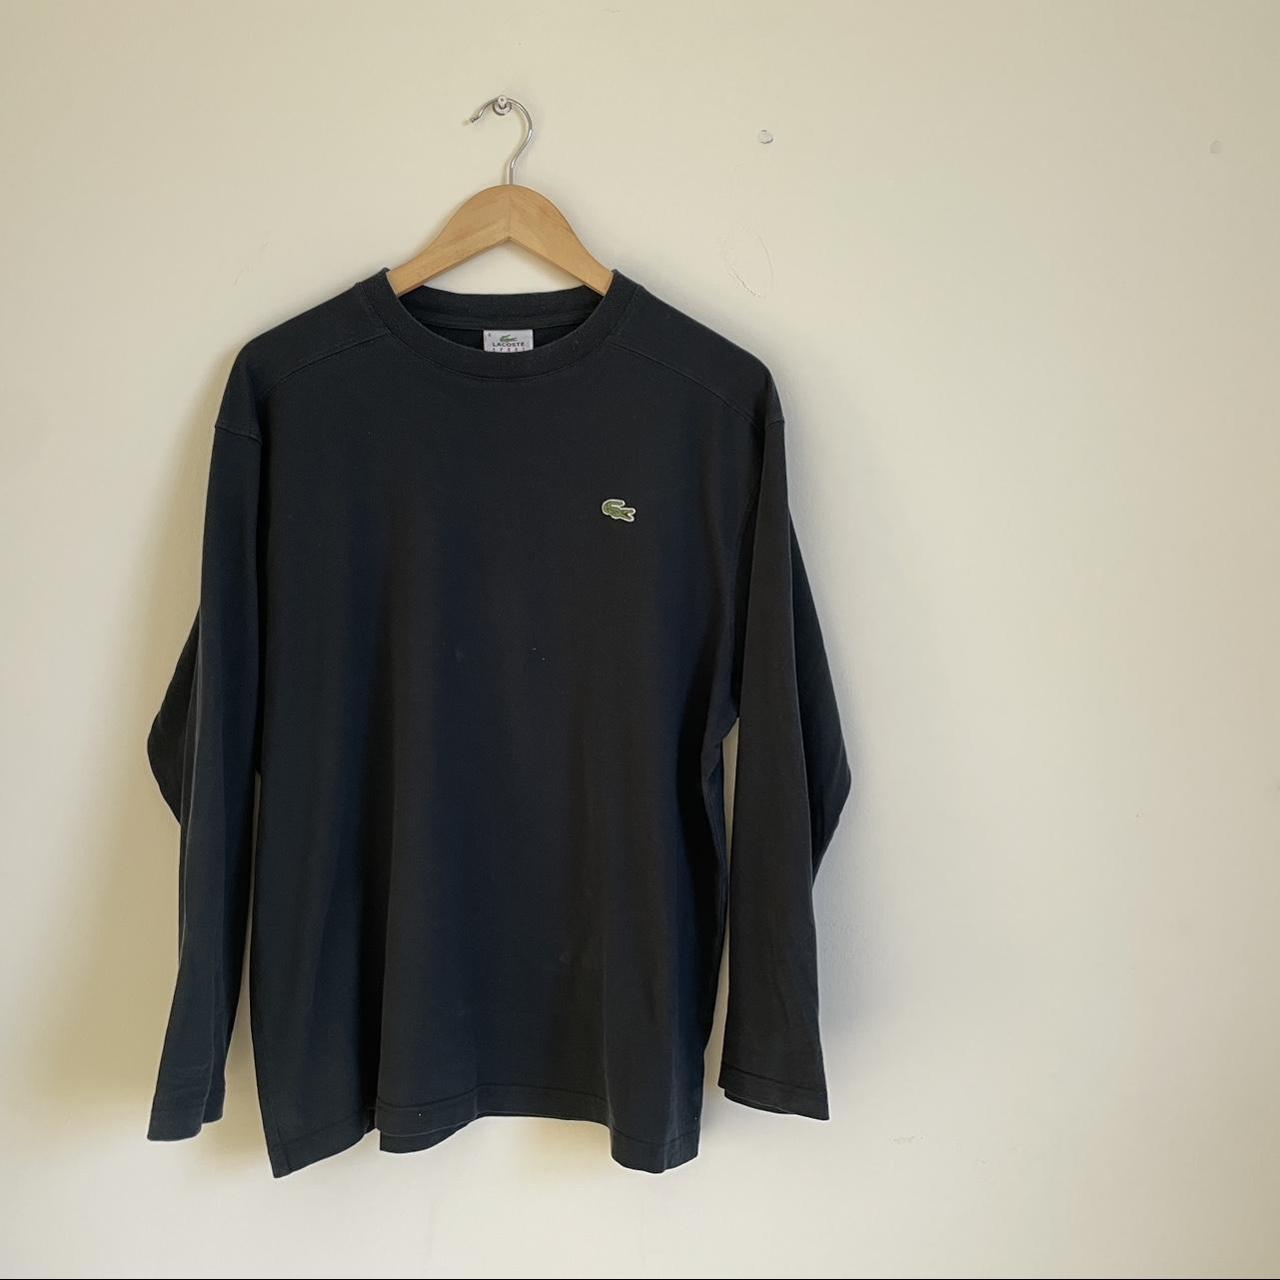 Lacoste Men's Black T-shirt | Depop